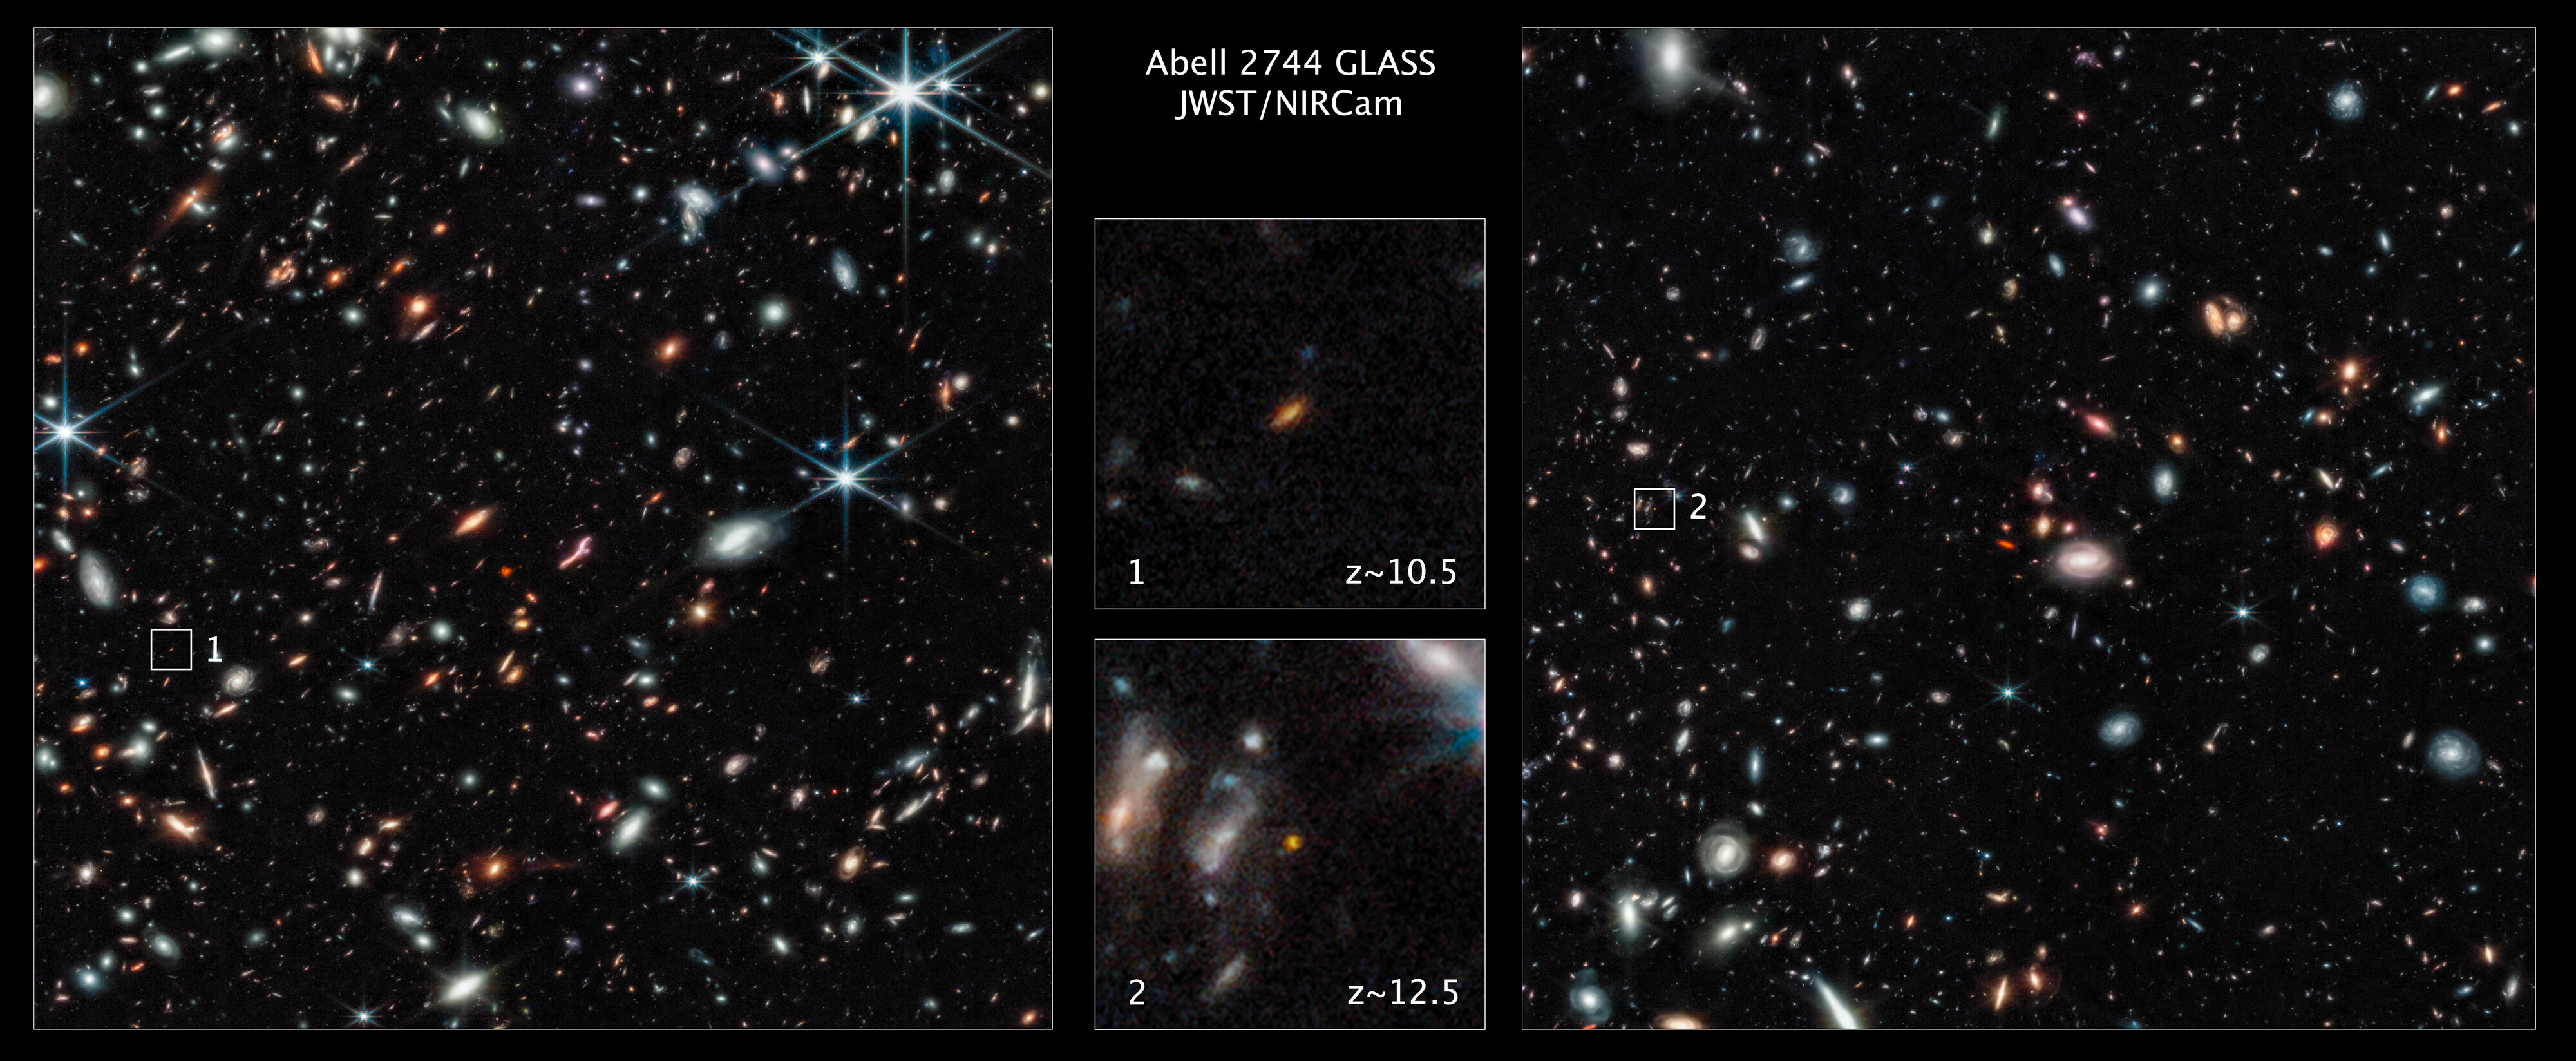 Teleskop Webba - galaktyka GLASS-z12 i gromada Pandora